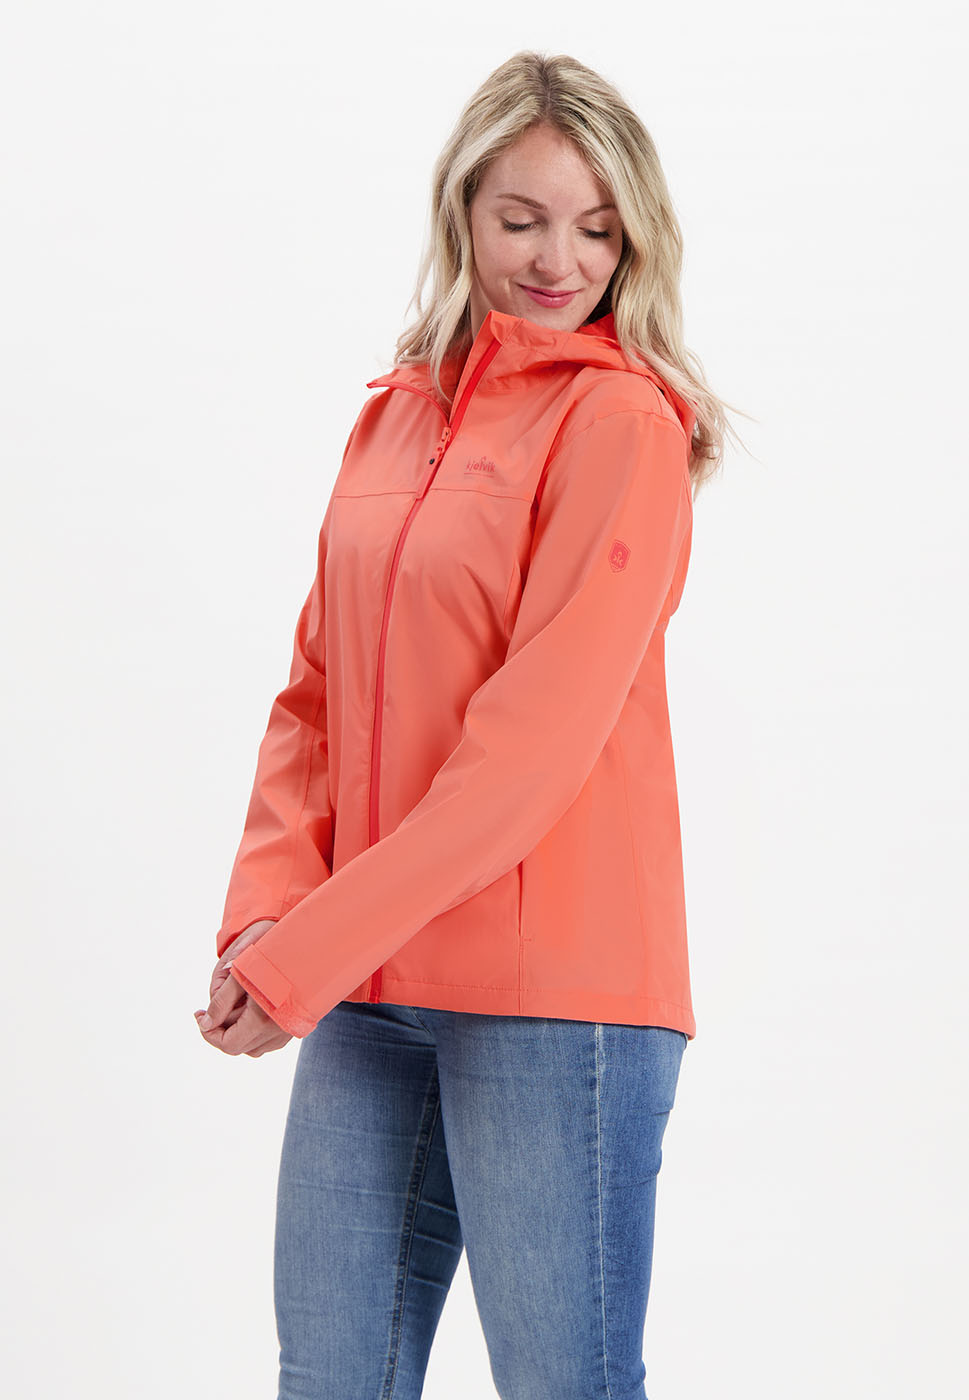 Kjelvik Scandinavian Clothing - Women Jackets Shirley Coral